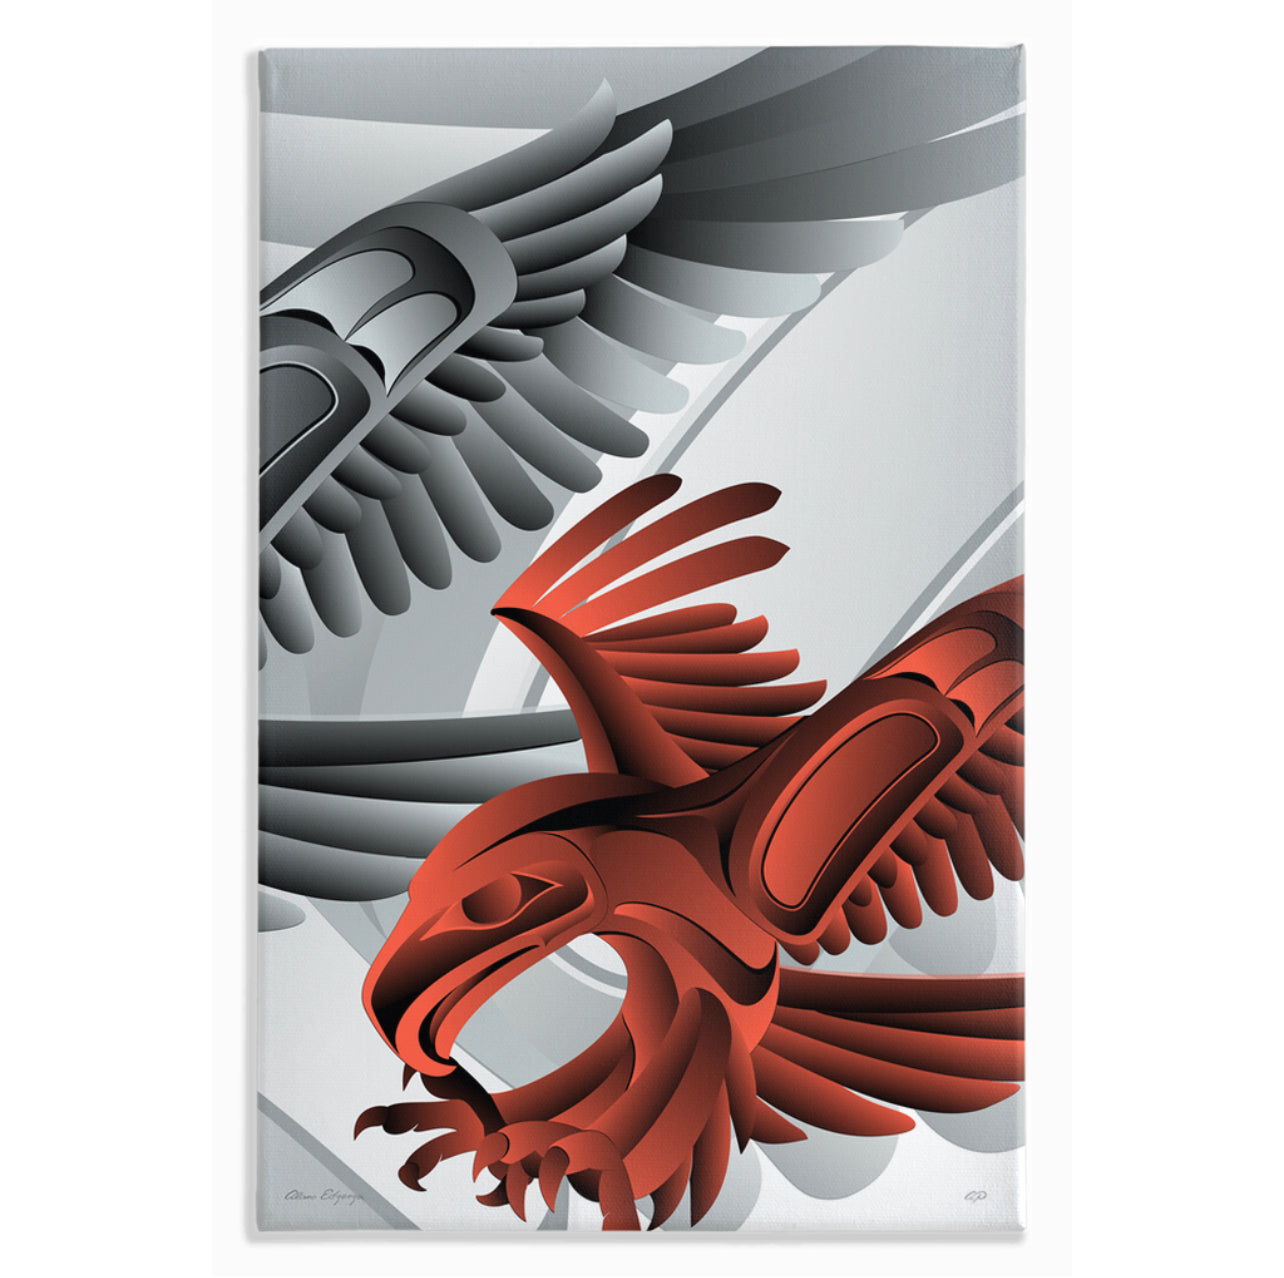 Eagle Landing Logo